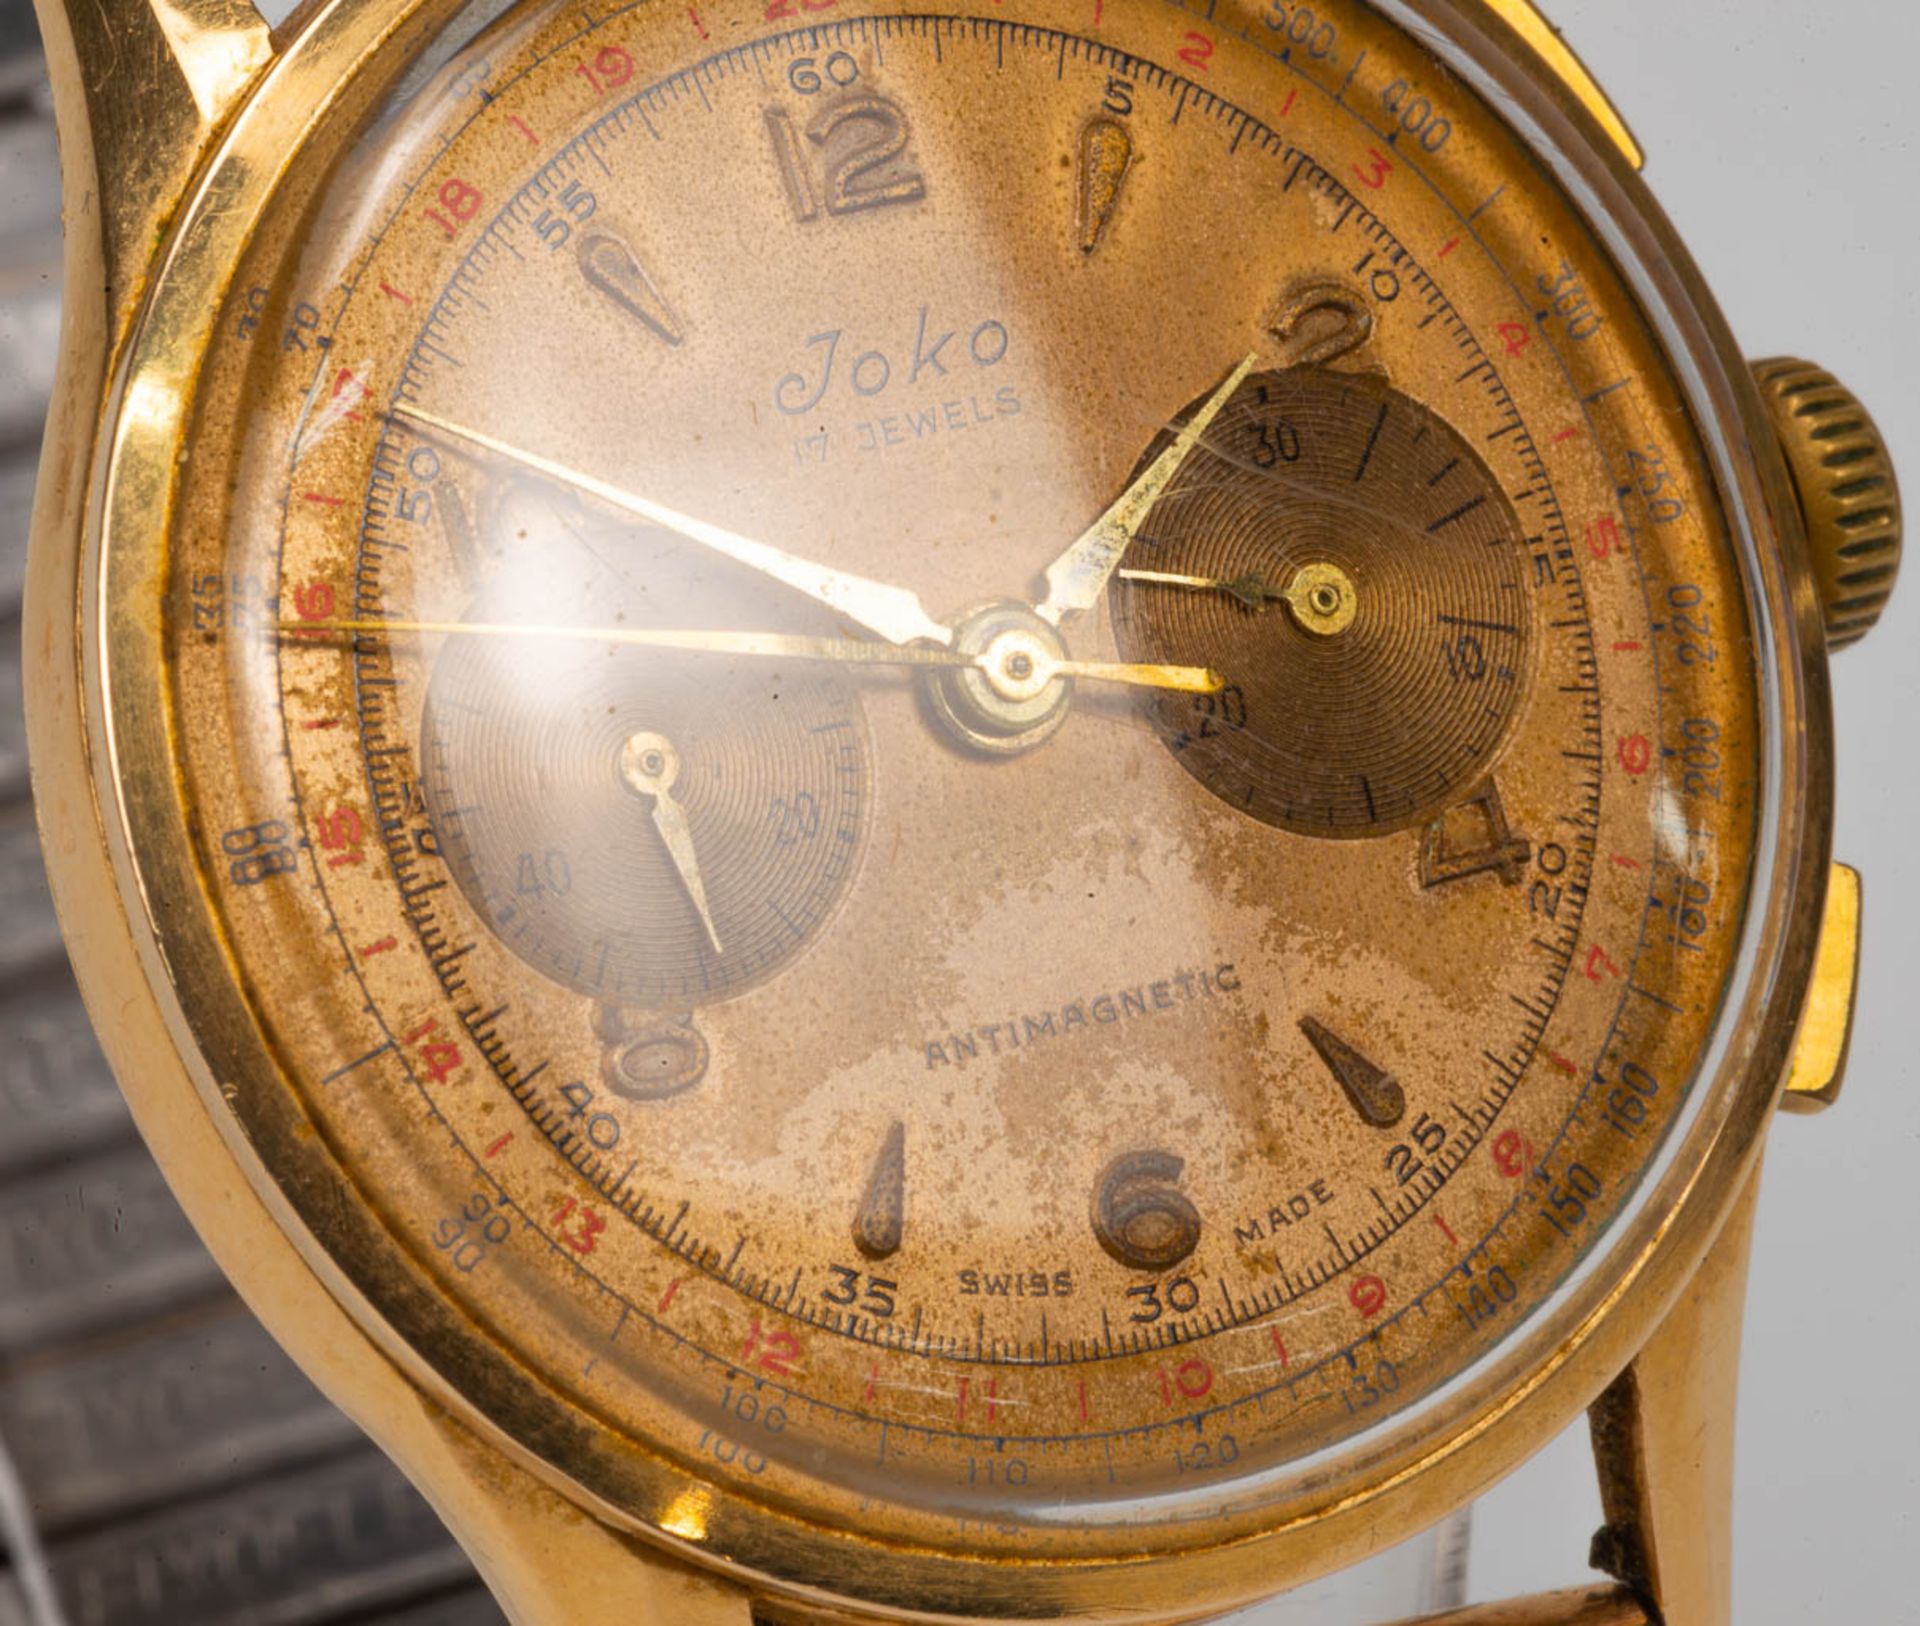 A Chronograph suisse mens's wristwatch marked Joco with an 18 karat gold case. Chronograph in workin - Bild 6 aus 6